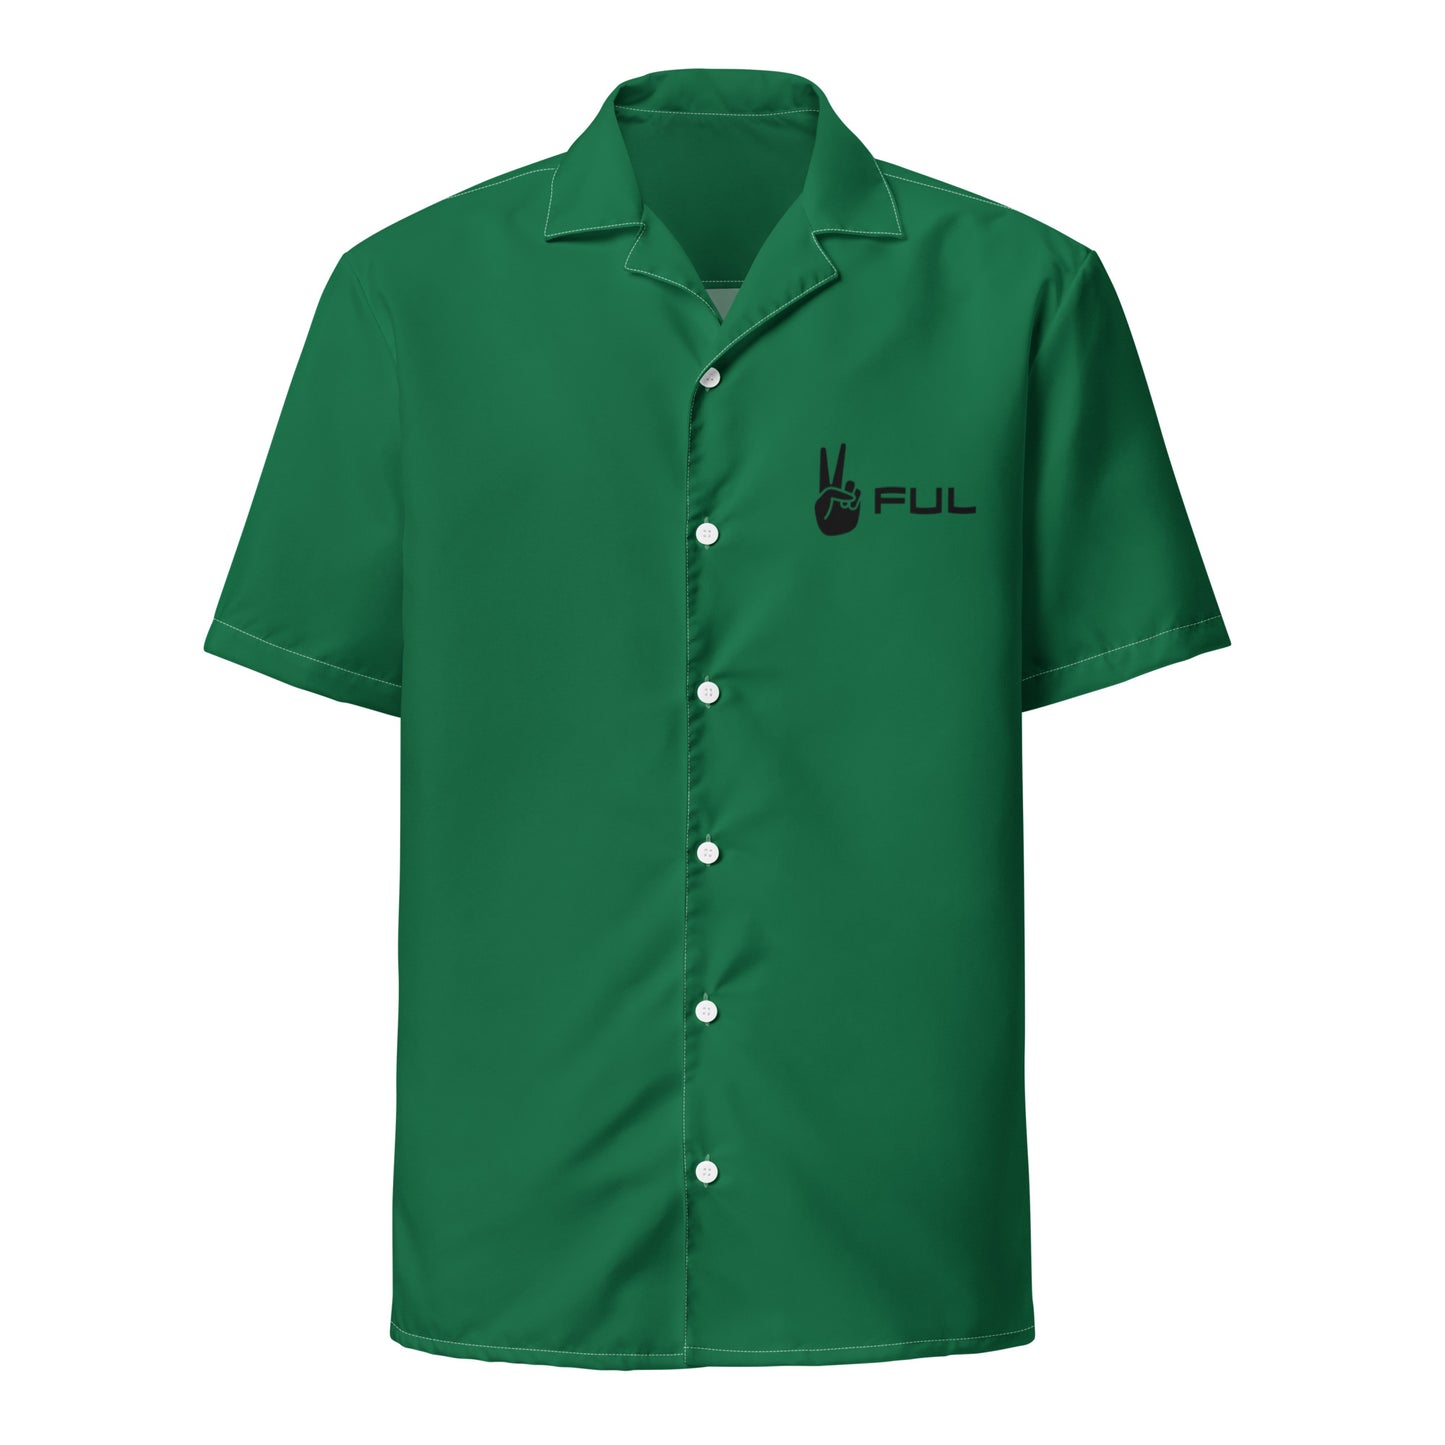 Unisex Green Peaceful button shirt